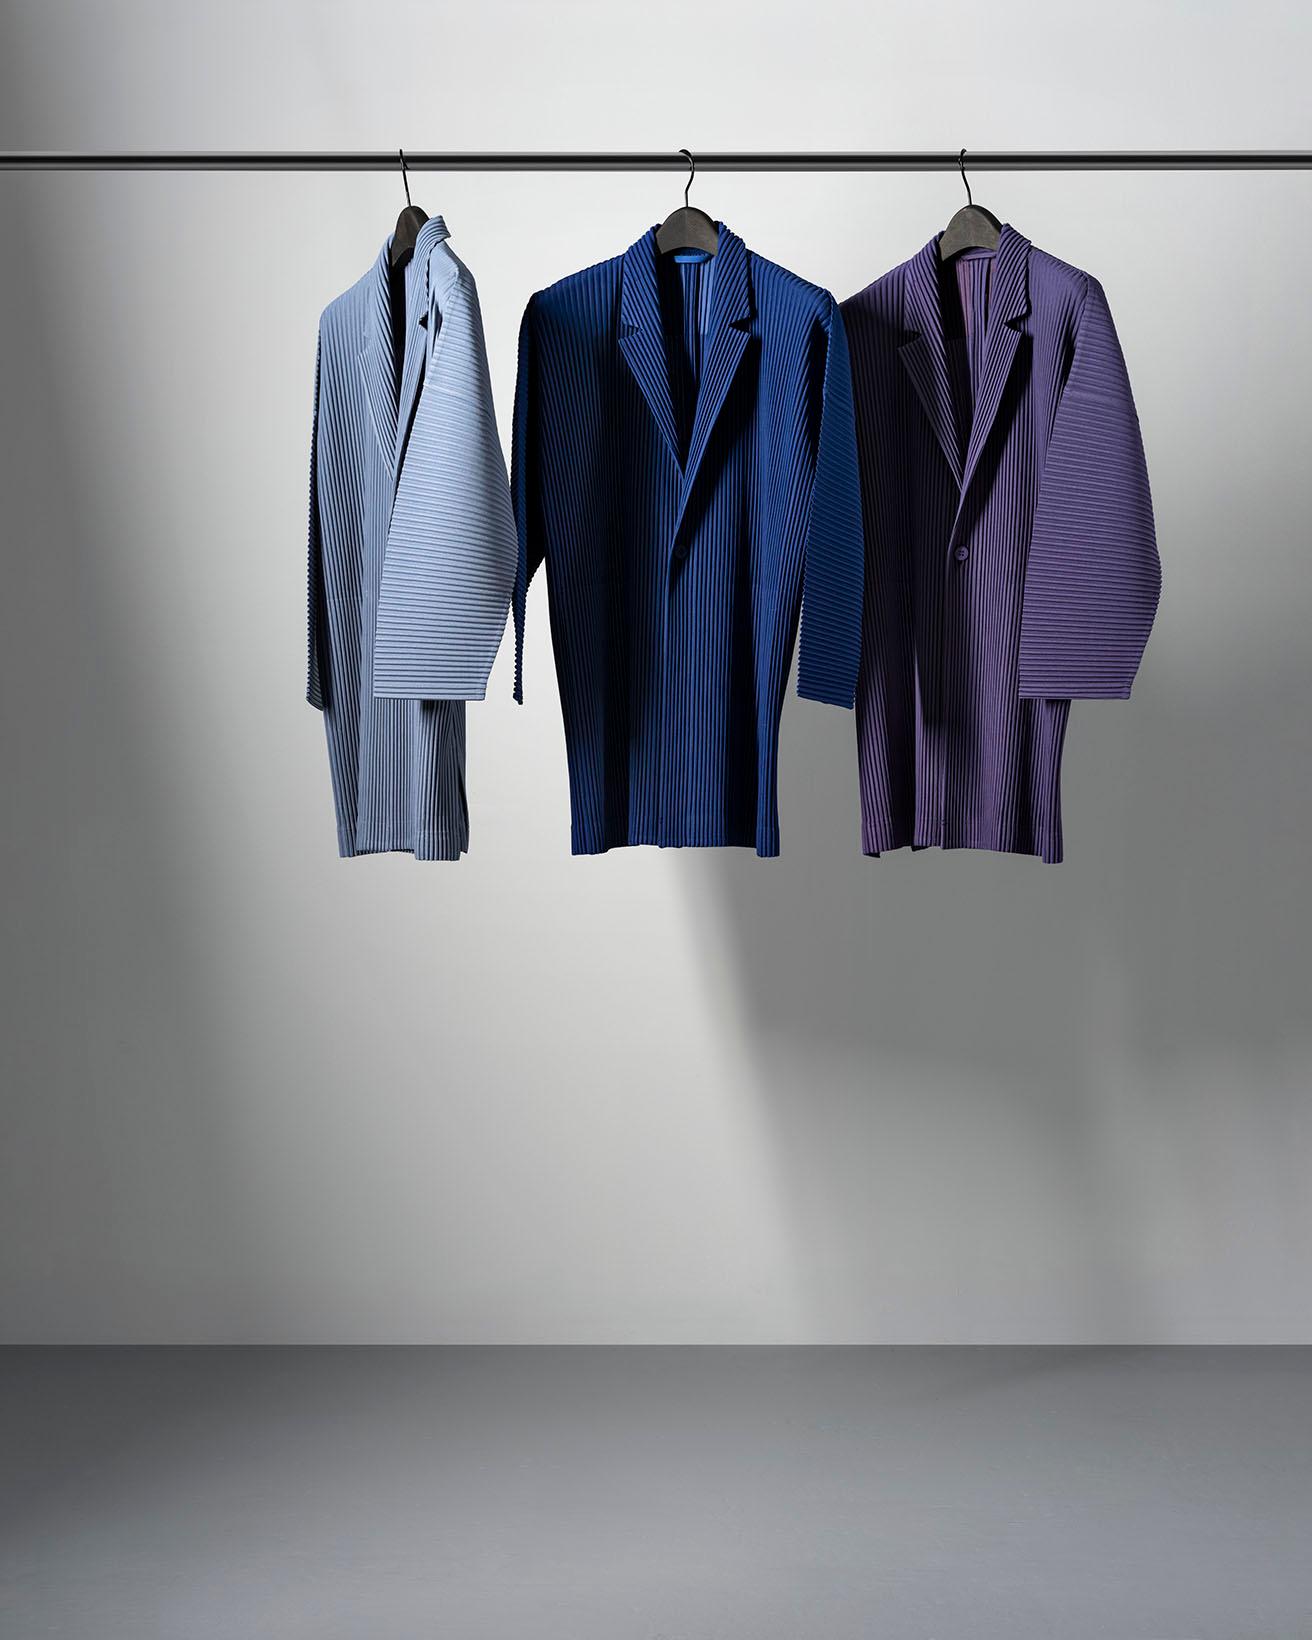 《DECADE》シリーズより、定番の3色（ライトグレー、ブラック、ネイビー）に10年を表す10色の計13色で表現されたジャケット。着丈がやや長いシルエットを特徴とする。各57,200円。